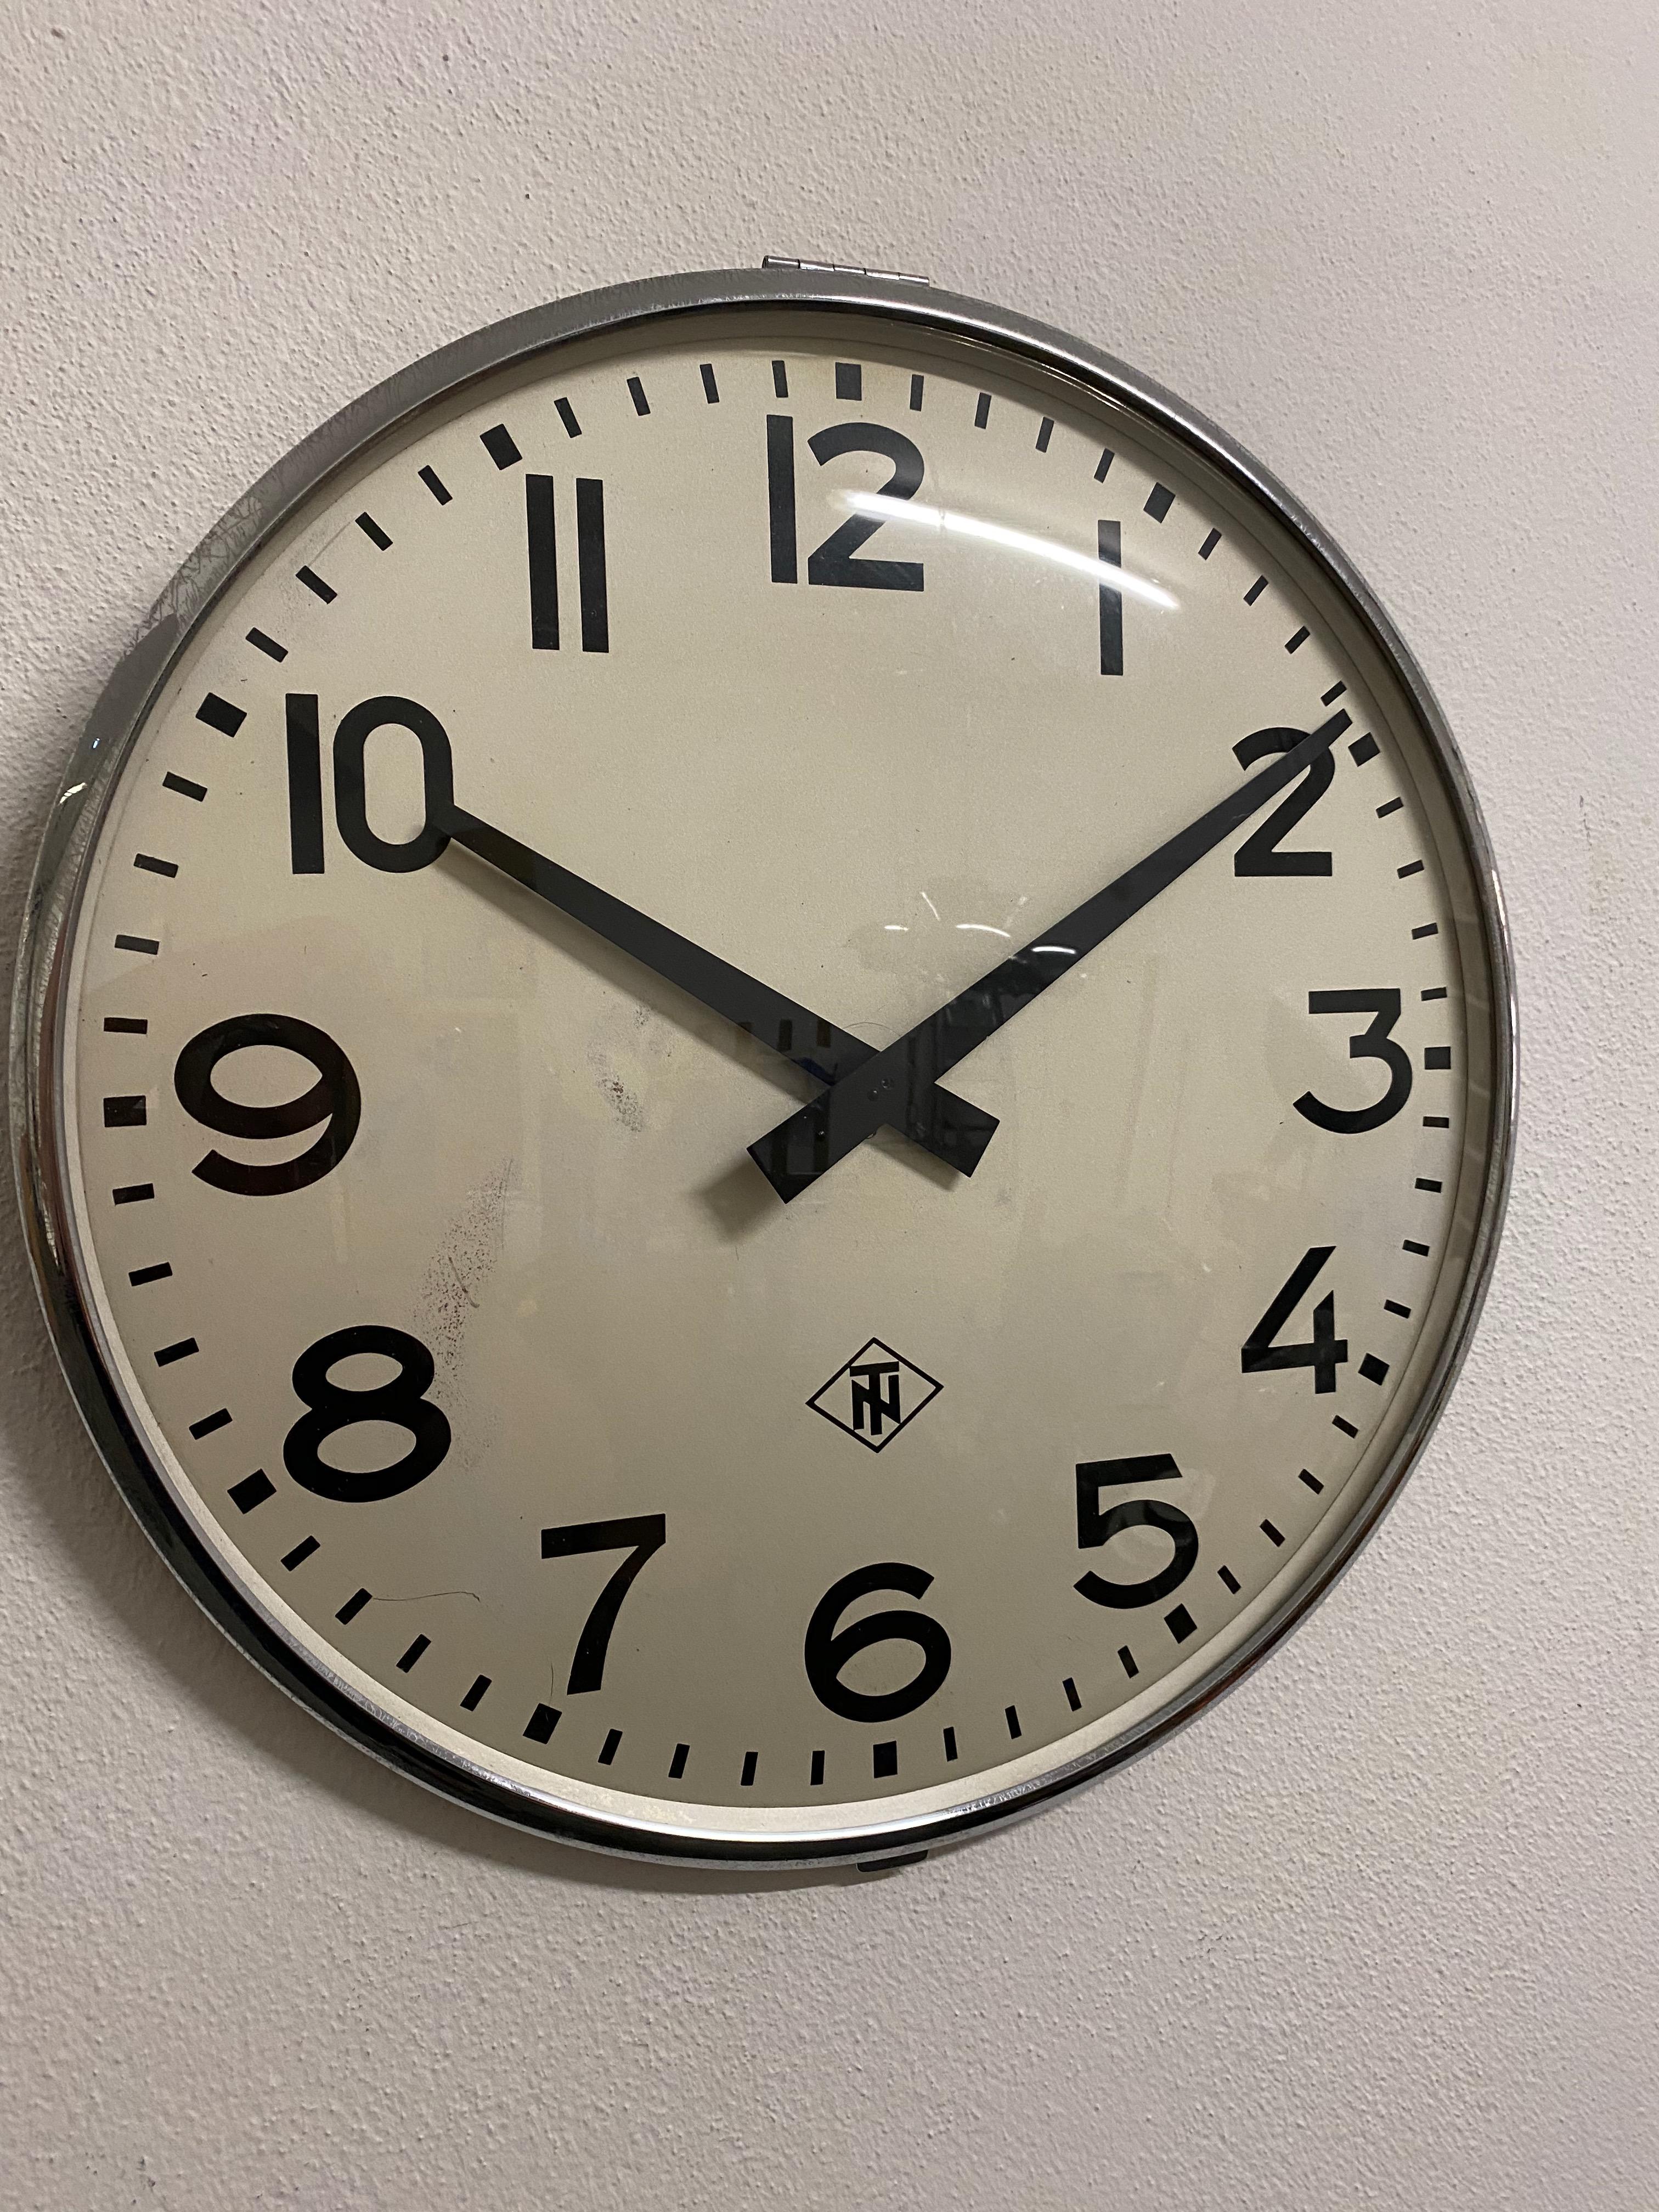 Cadre en acier peint avec un cadran d'horloge en aluminium, une aiguille d'horloge et un couvercle en verre. Fabriqué en Allemagne à la fin des années 1970 par TN (Telefonbau und Normalzeit). Ancienne horloge d'esclave, elle est aujourd'hui équipée